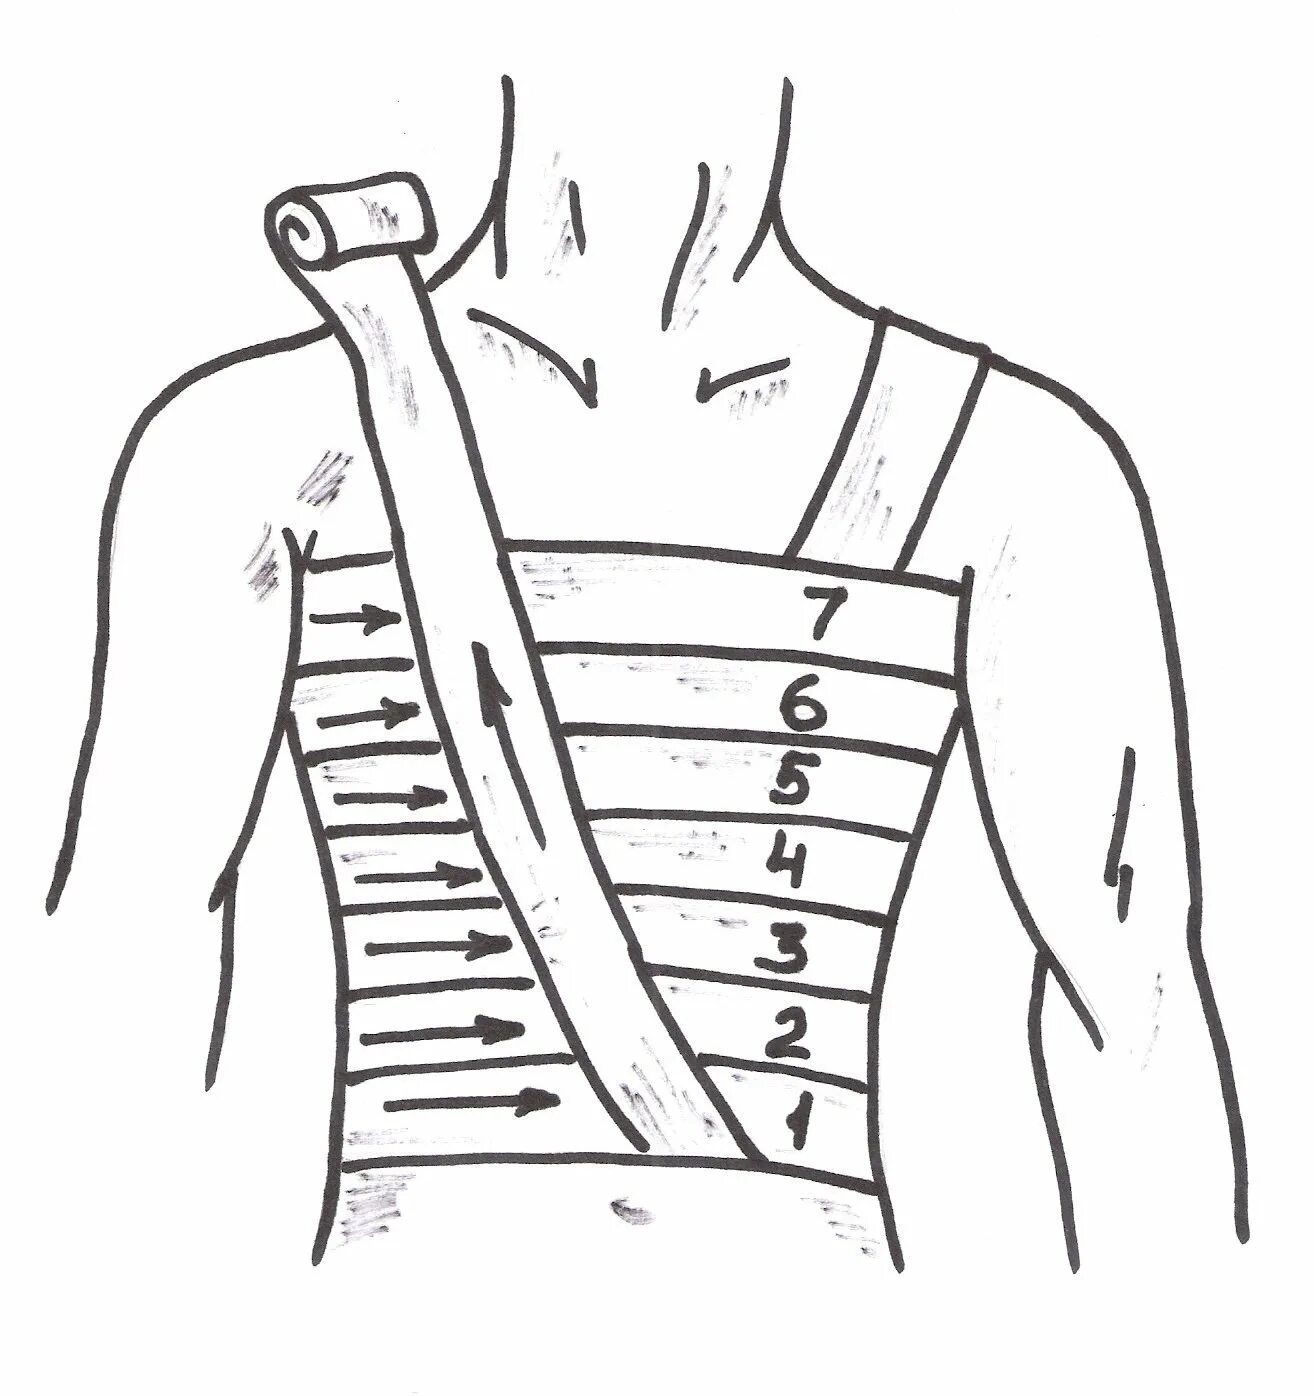 Спиральная повязка алгоритм. Десмургия спиральная повязка на грудную клетку. Наложение спиральной повязки на грудную клетку. Спиралевидная повязка на грудную клетку алгоритм. Спиральная повязка при переломе ребер.